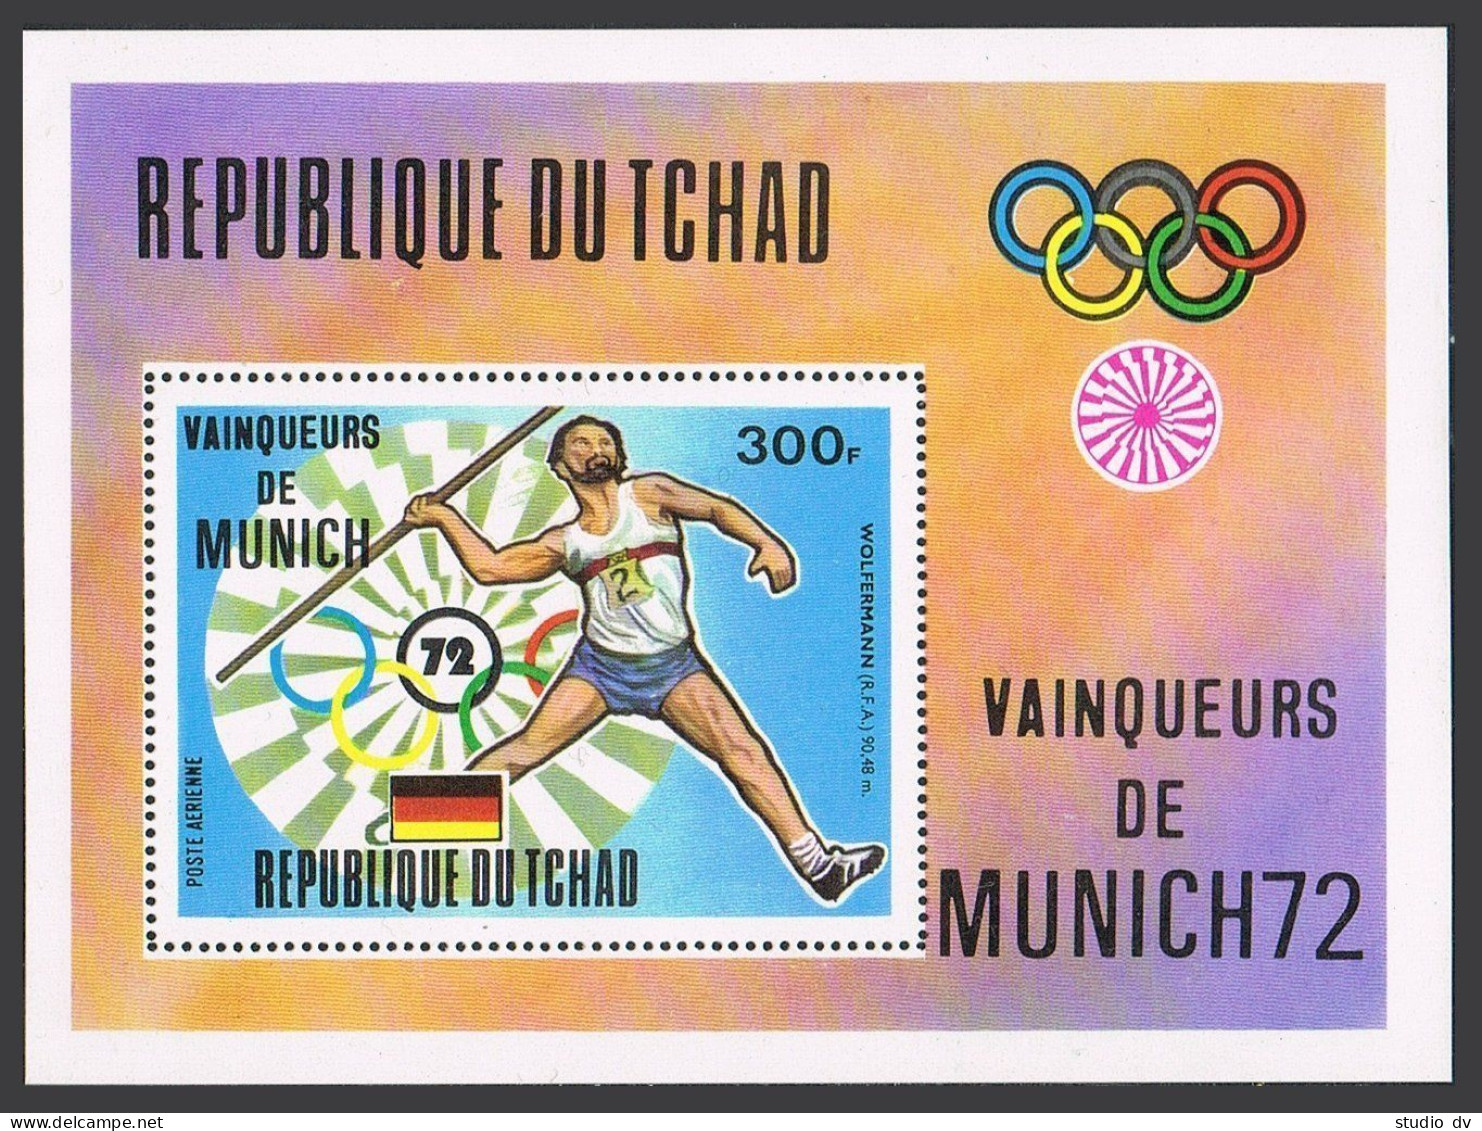 Chad 281-284, C148-C149, C150 Sheet, MNH. Olympics Munich-1972, Winners, Set 1. - Tchad (1960-...)